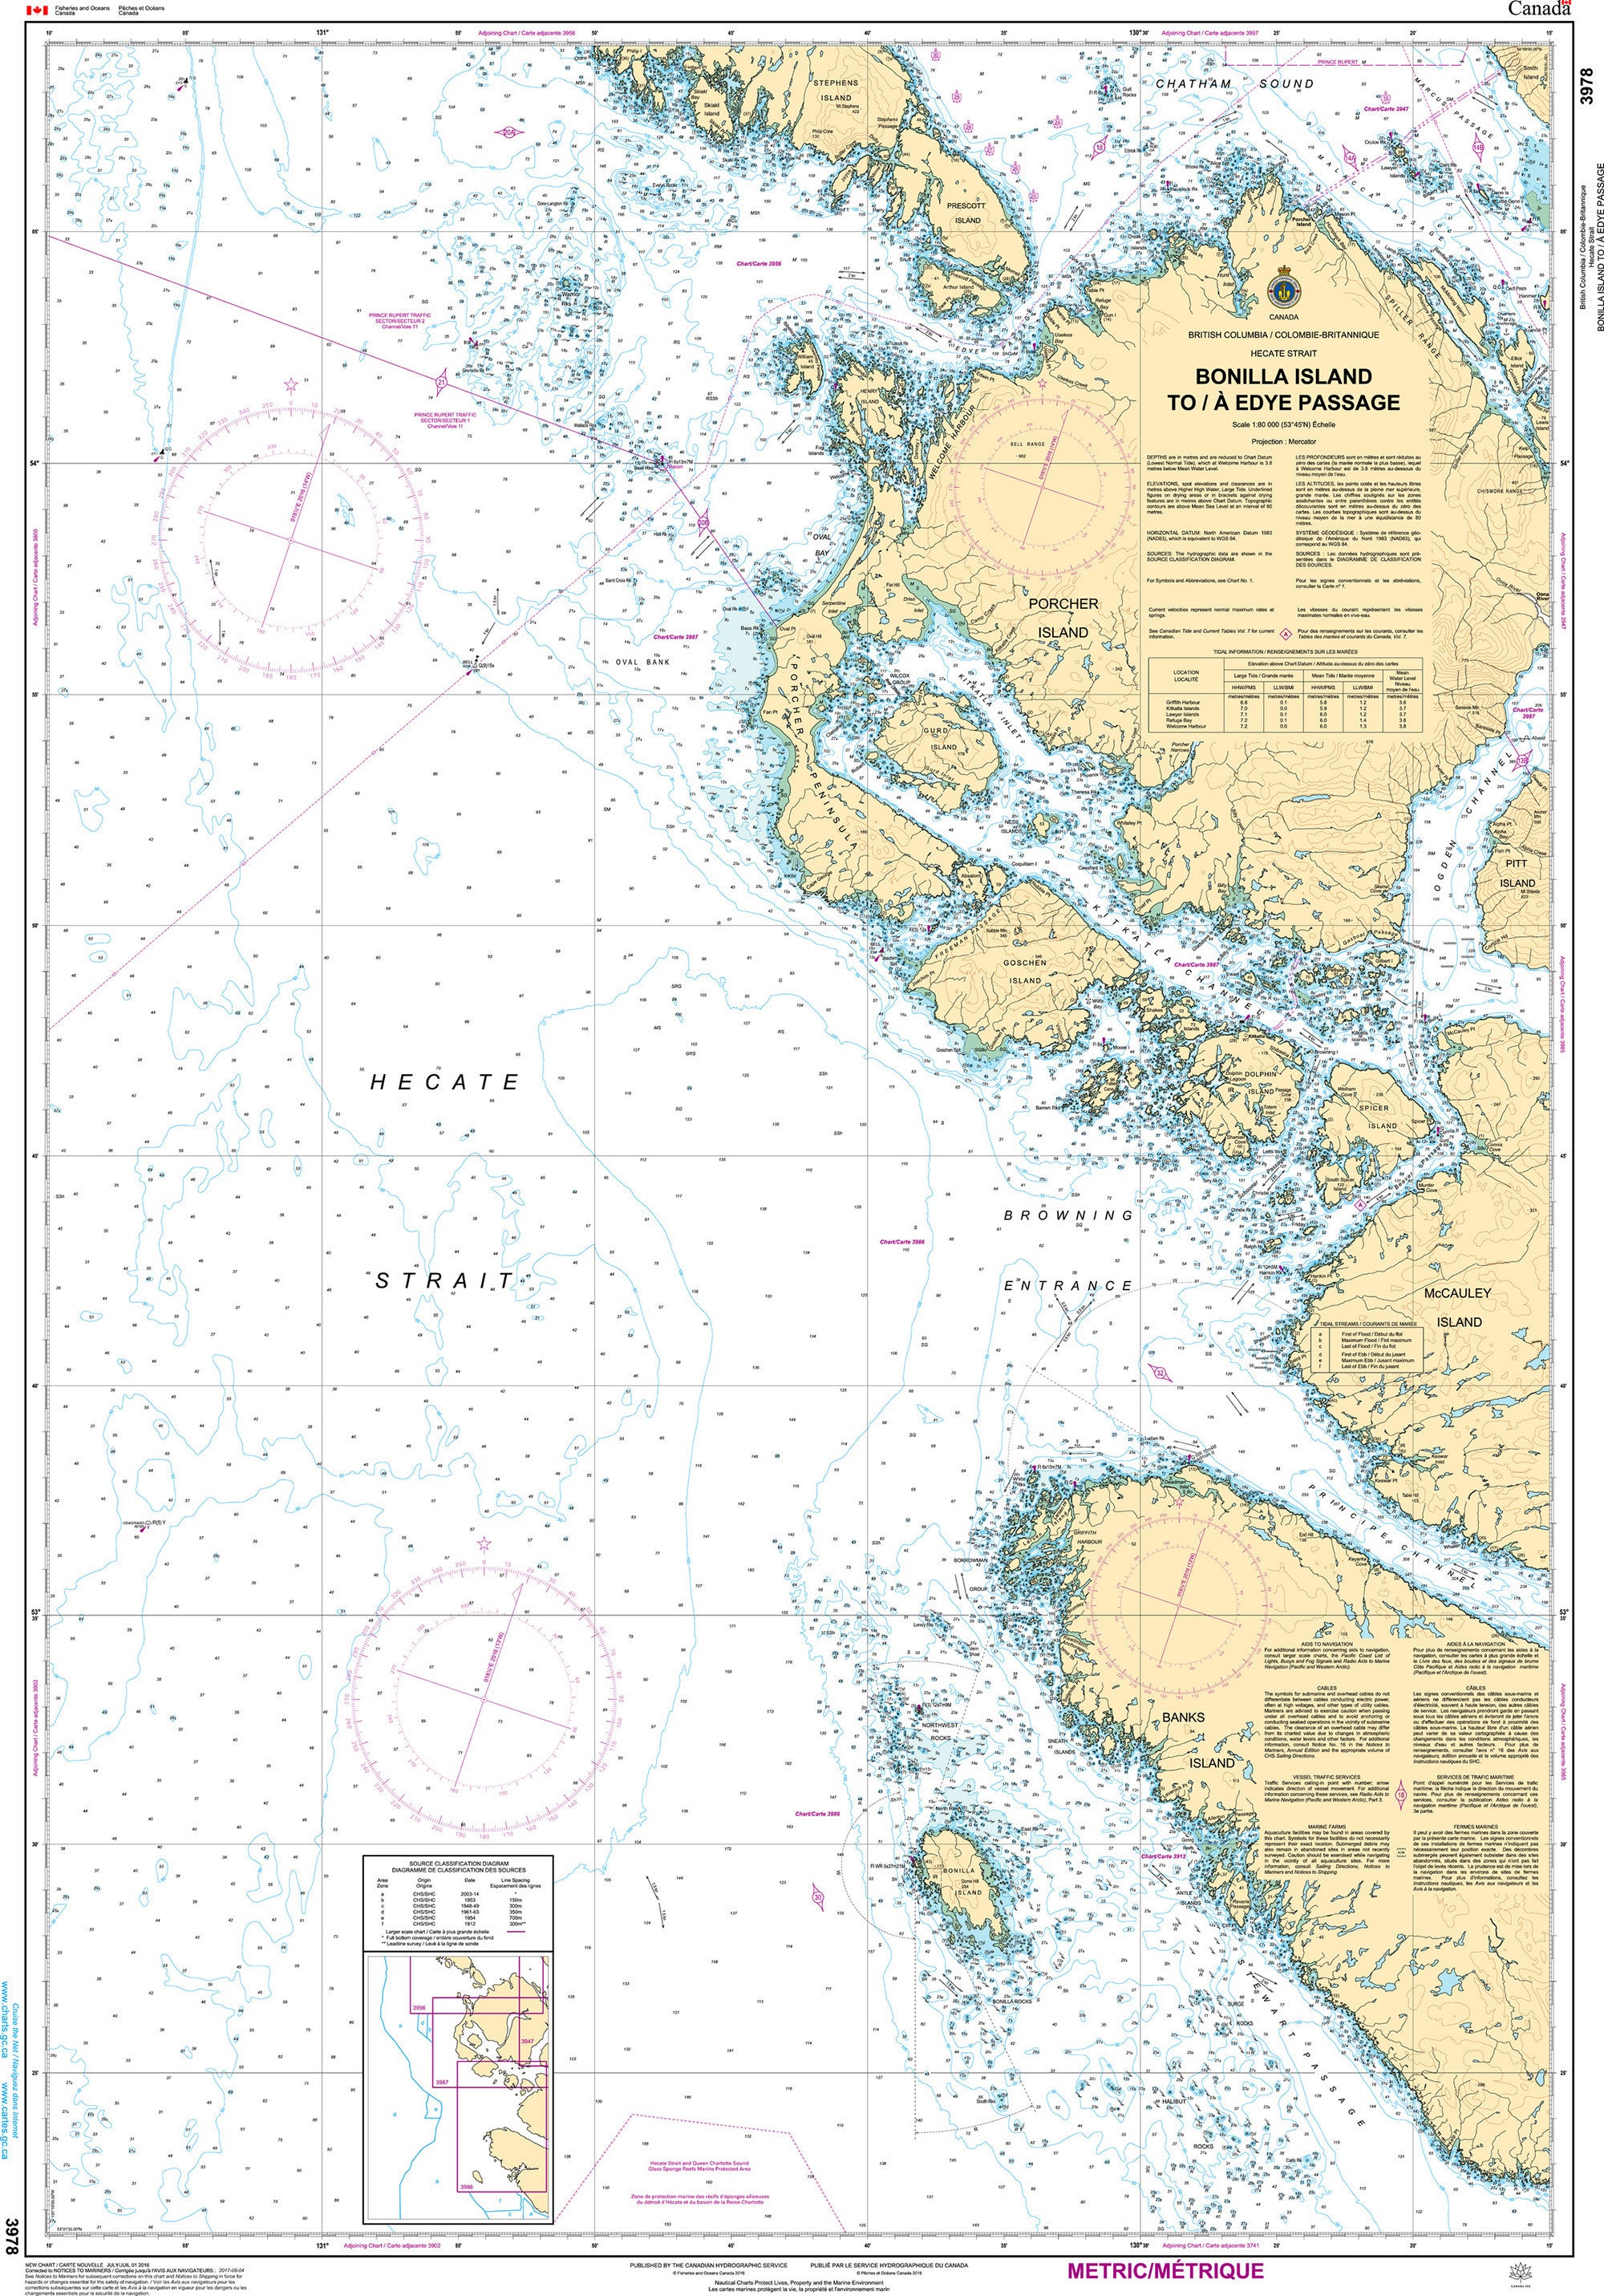 Canadian Hydrographic Service Nautical Chart CHS3978: Bonilla Island to/à Edye Passage